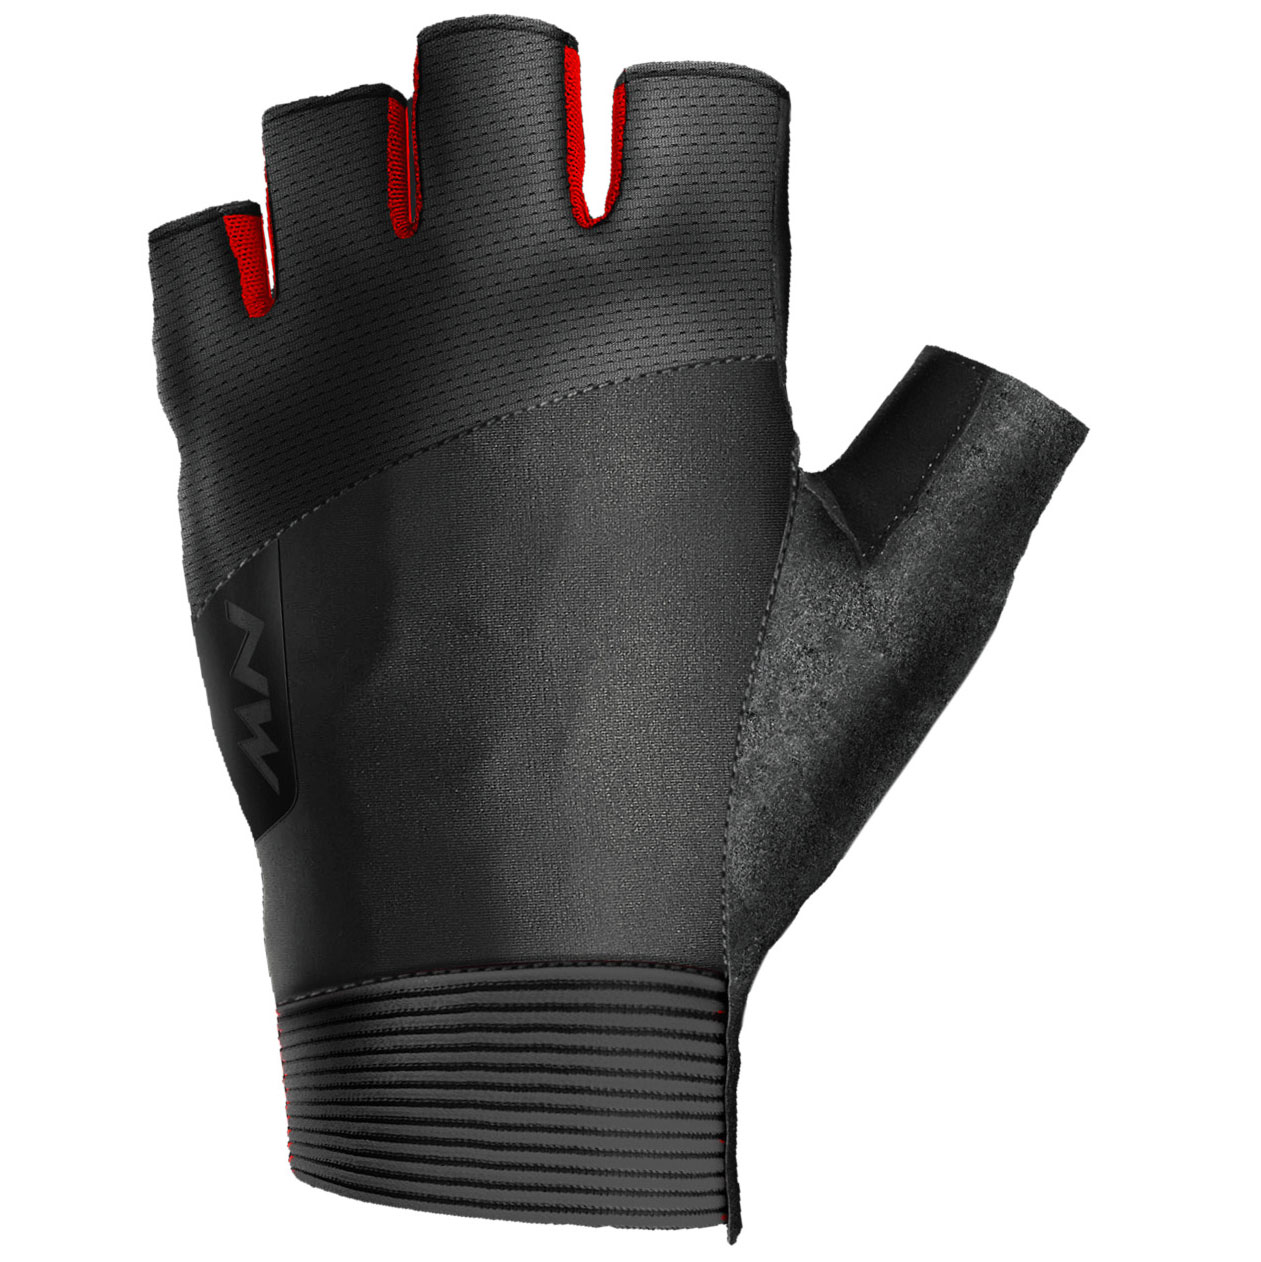 Produktbild von Northwave Extreme Kurzfinger-Handschuhe Herren - schwarz/rot 15